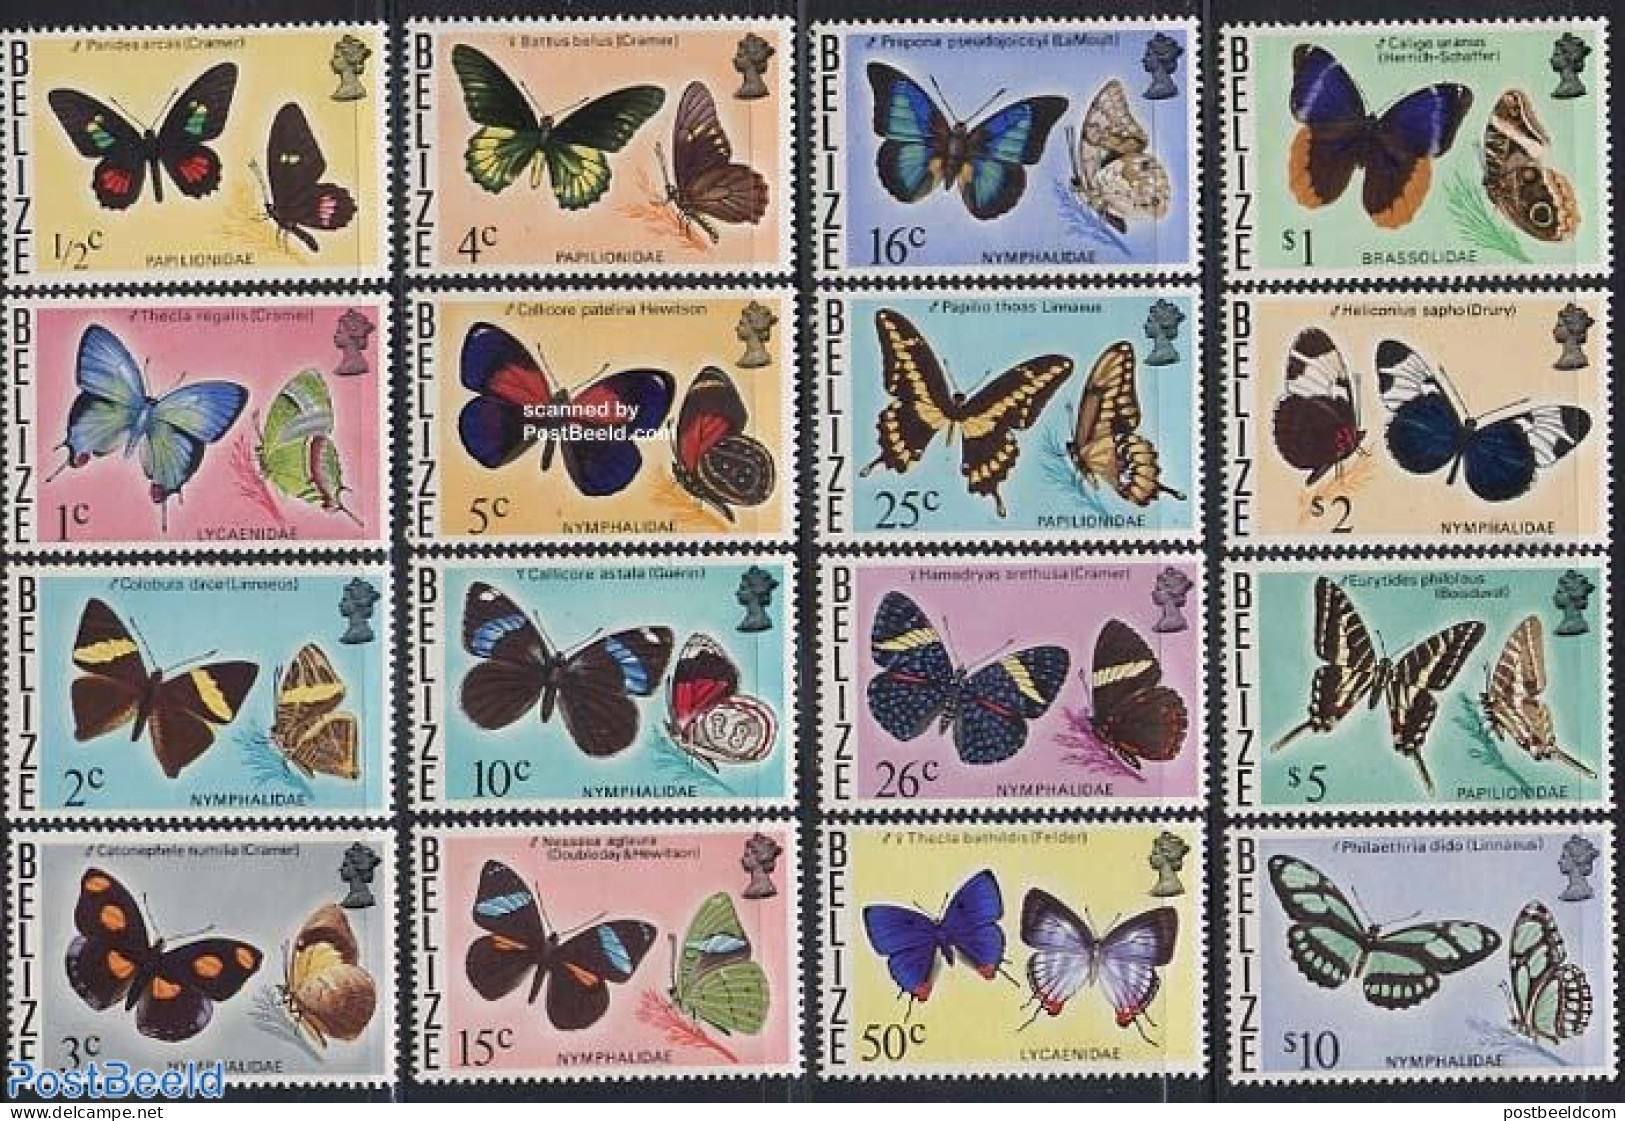 Belize/British Honduras 1974 Butterflies 16v, Mint NH, Nature - Butterflies - Britisch-Honduras (...-1970)